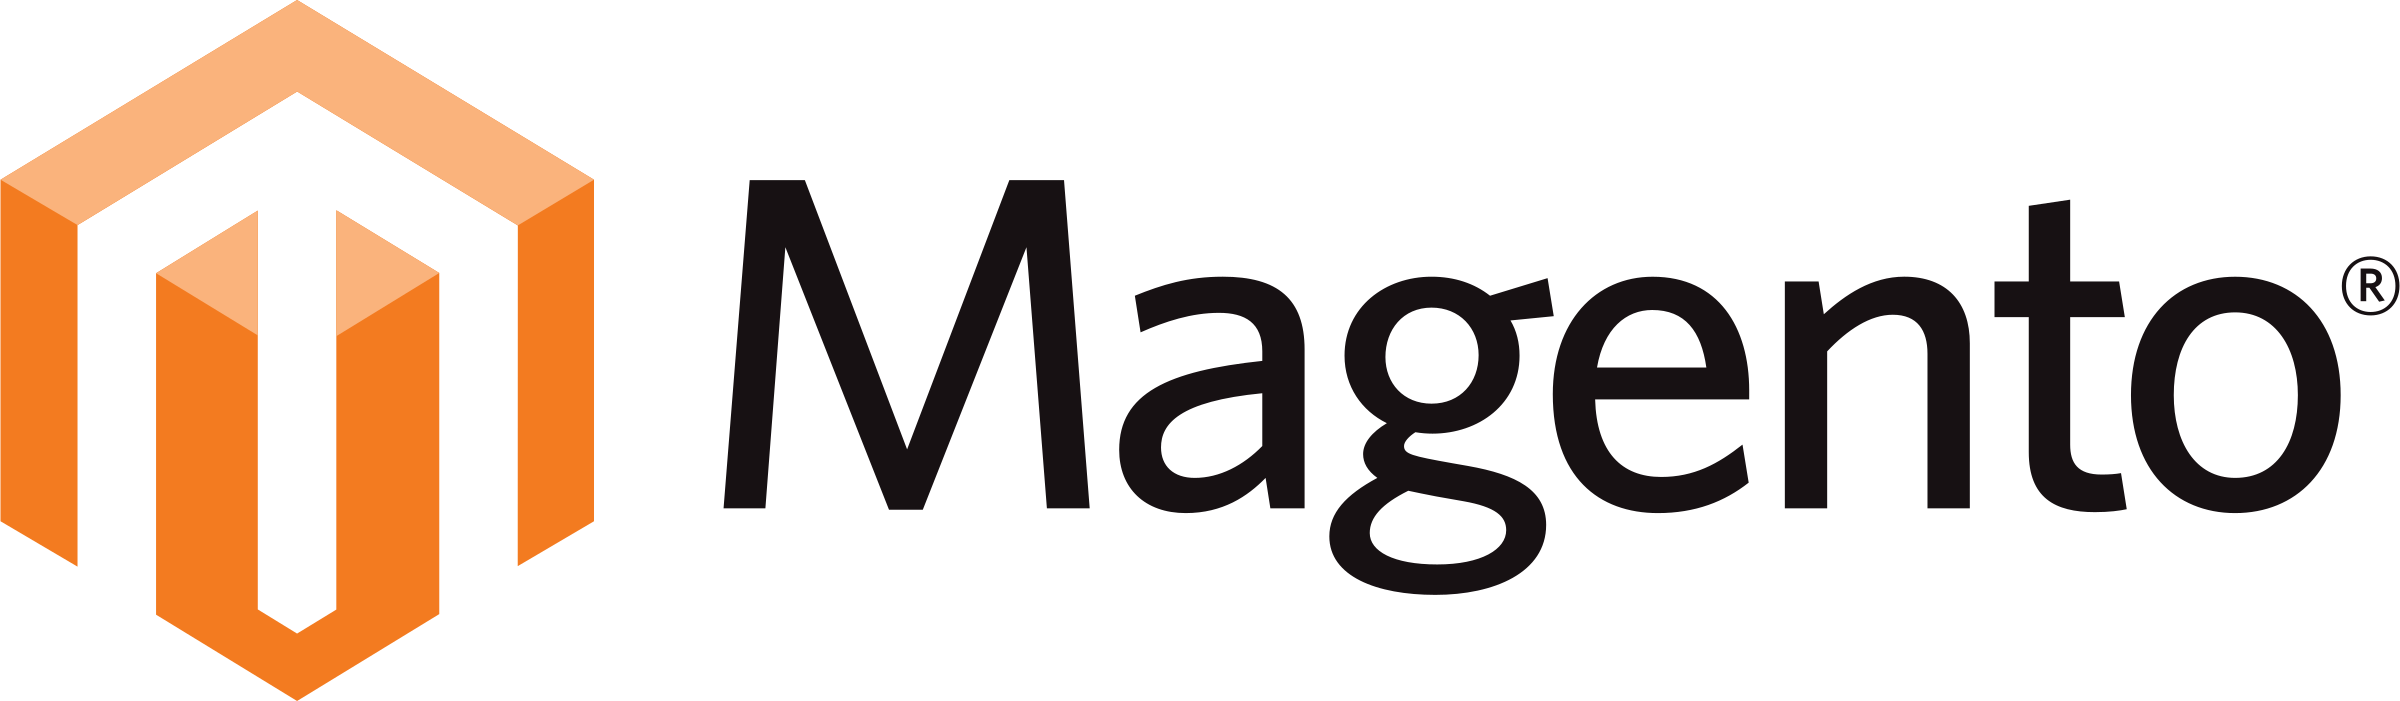 magento-1-logo-png-transparent